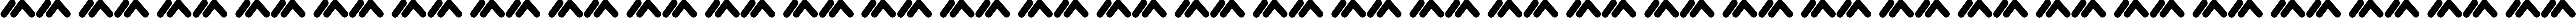 Пример написания русского алфавита шрифтом MacroMX